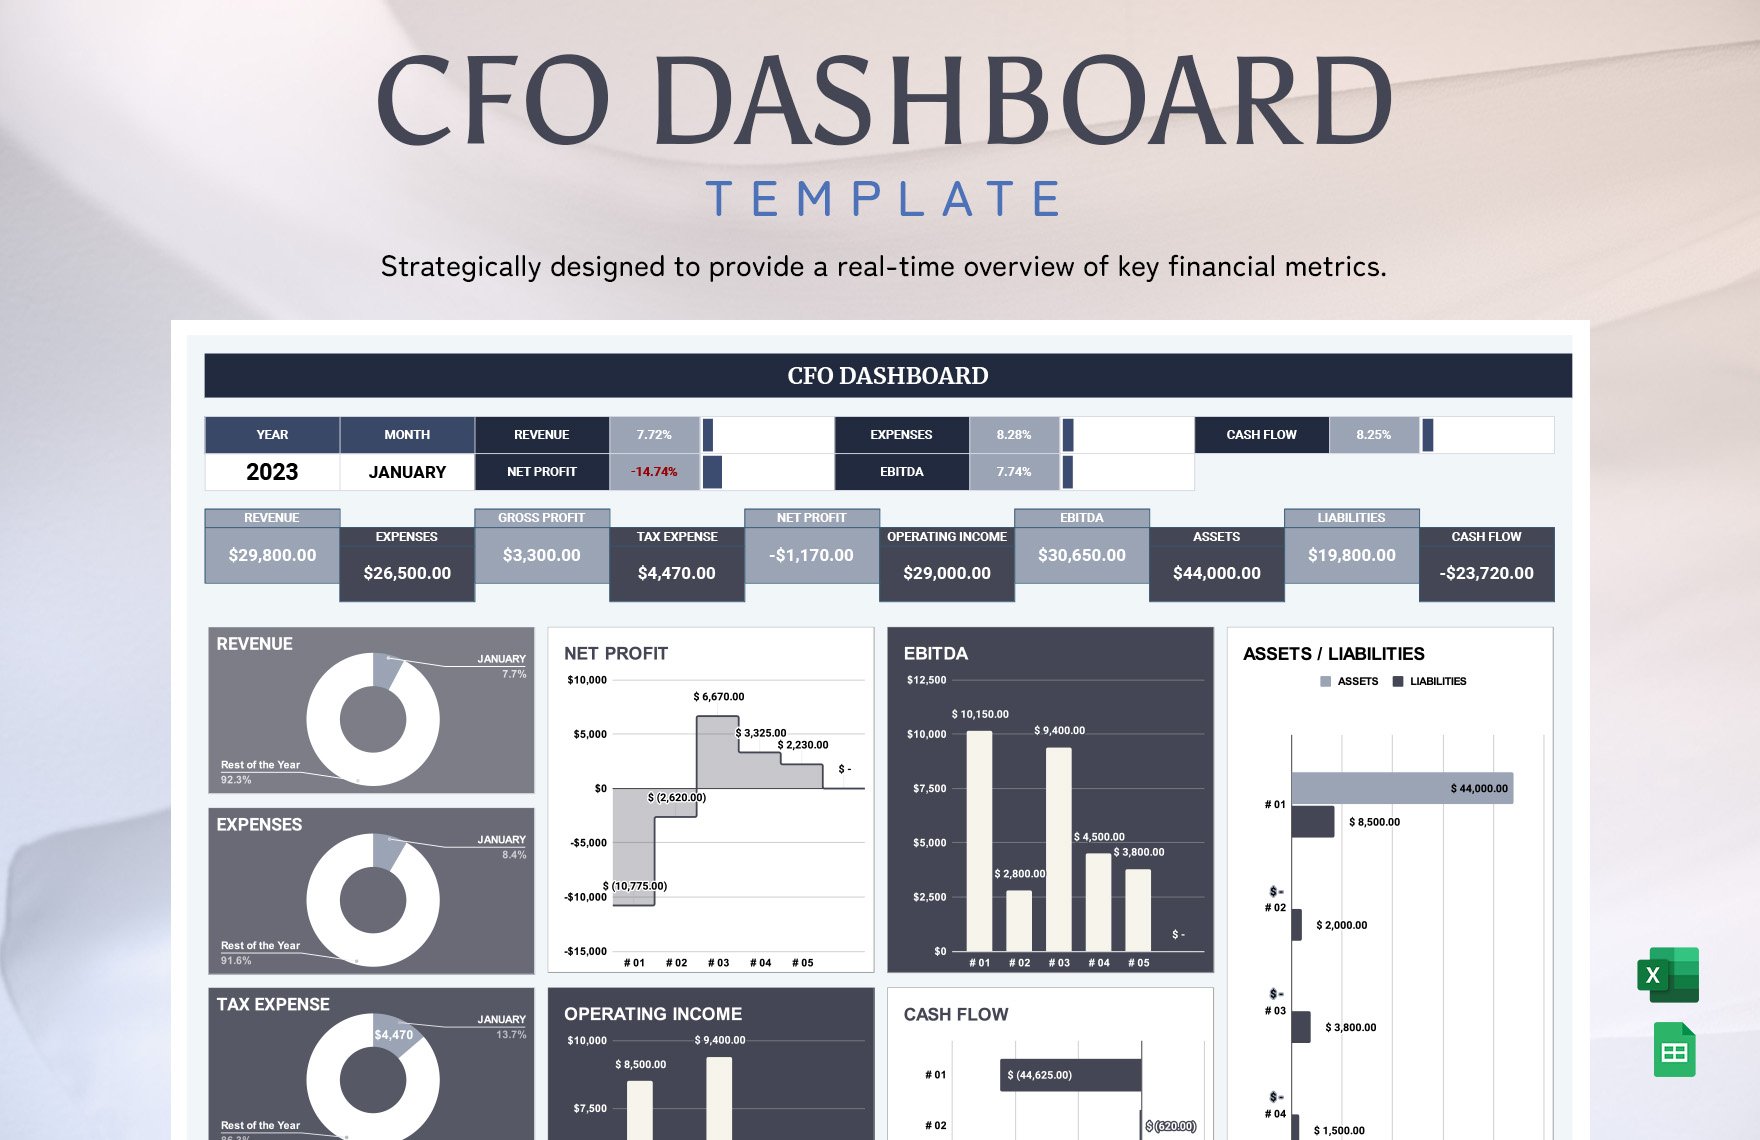 CFO Dashboard Template